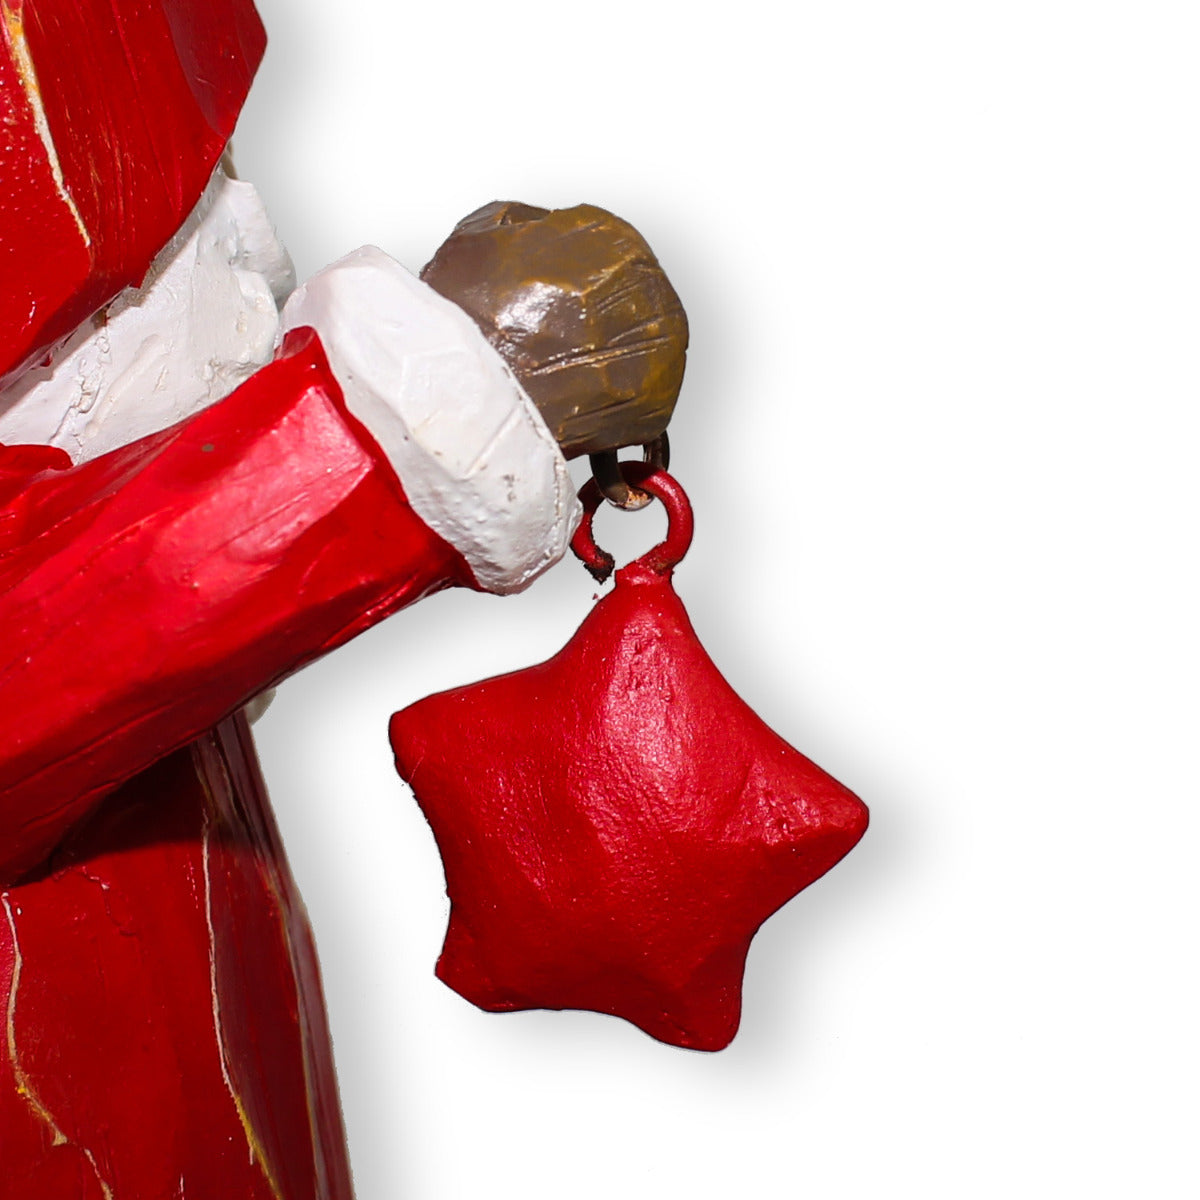 Weihnachtsmann Figur mit Stern in Holz-Optik Fensterdeko Weihnachten 21cm